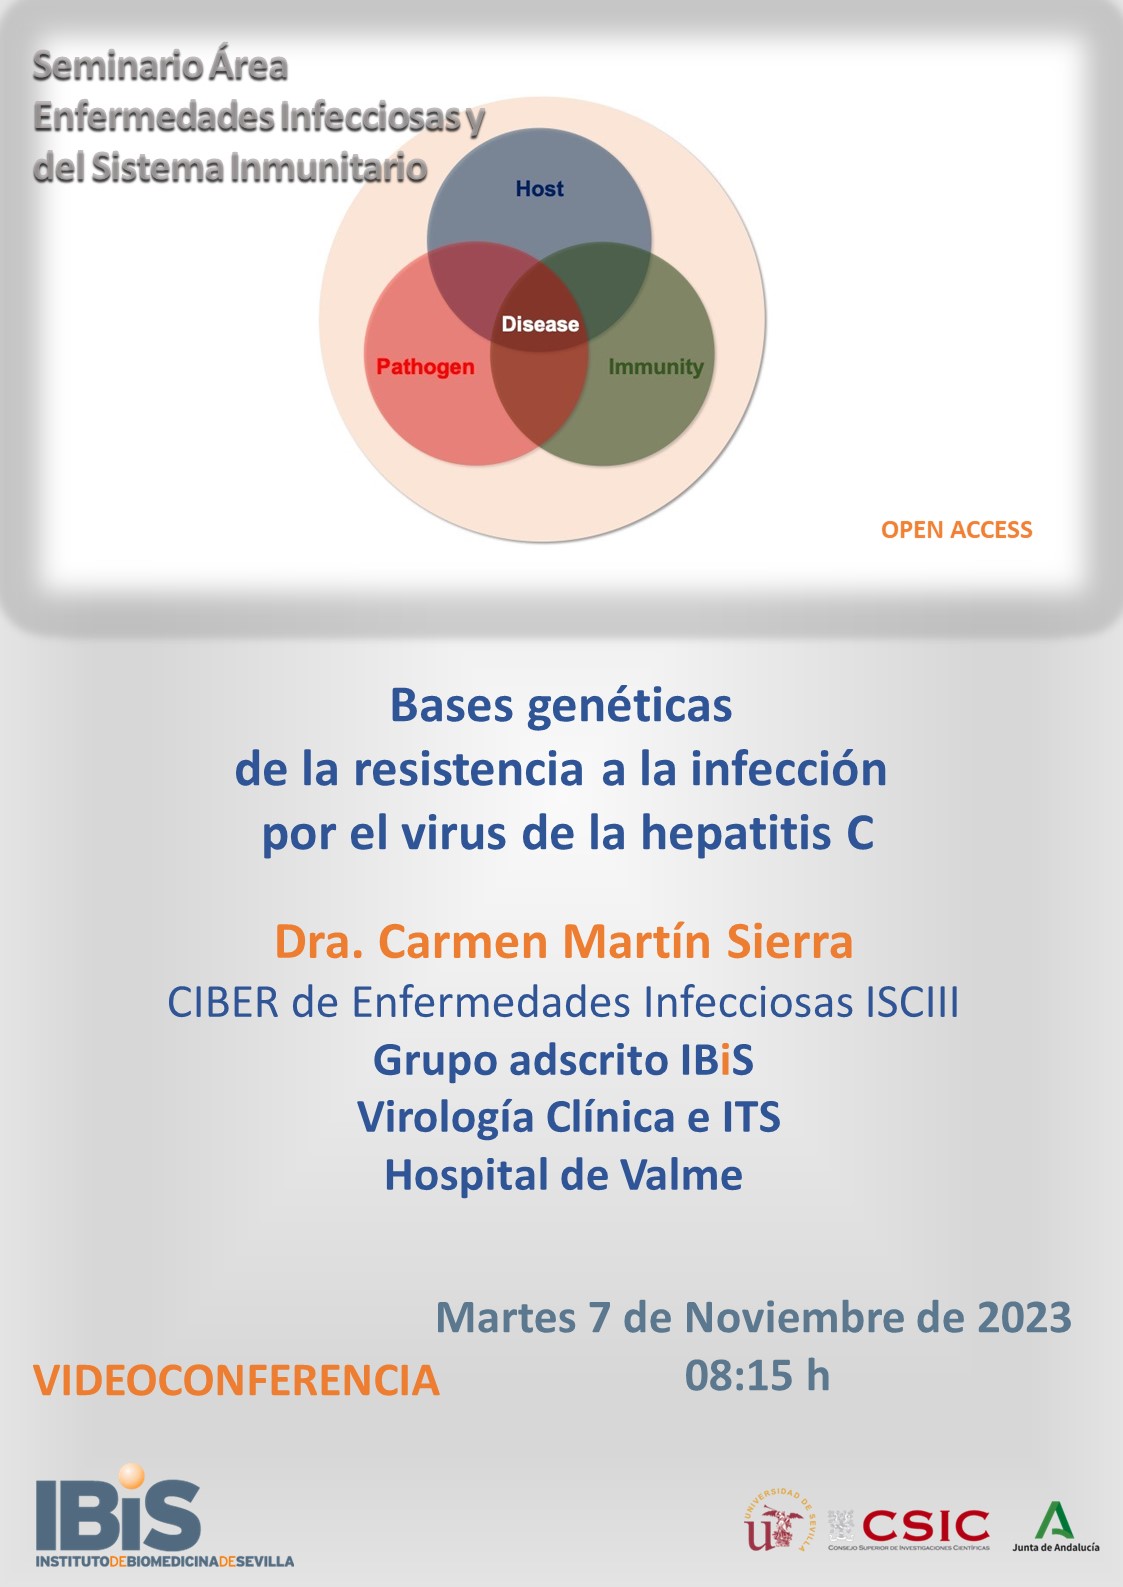 Poster: Bases Genéticas de la resistencia a la infección por el virus de la hepatitis C